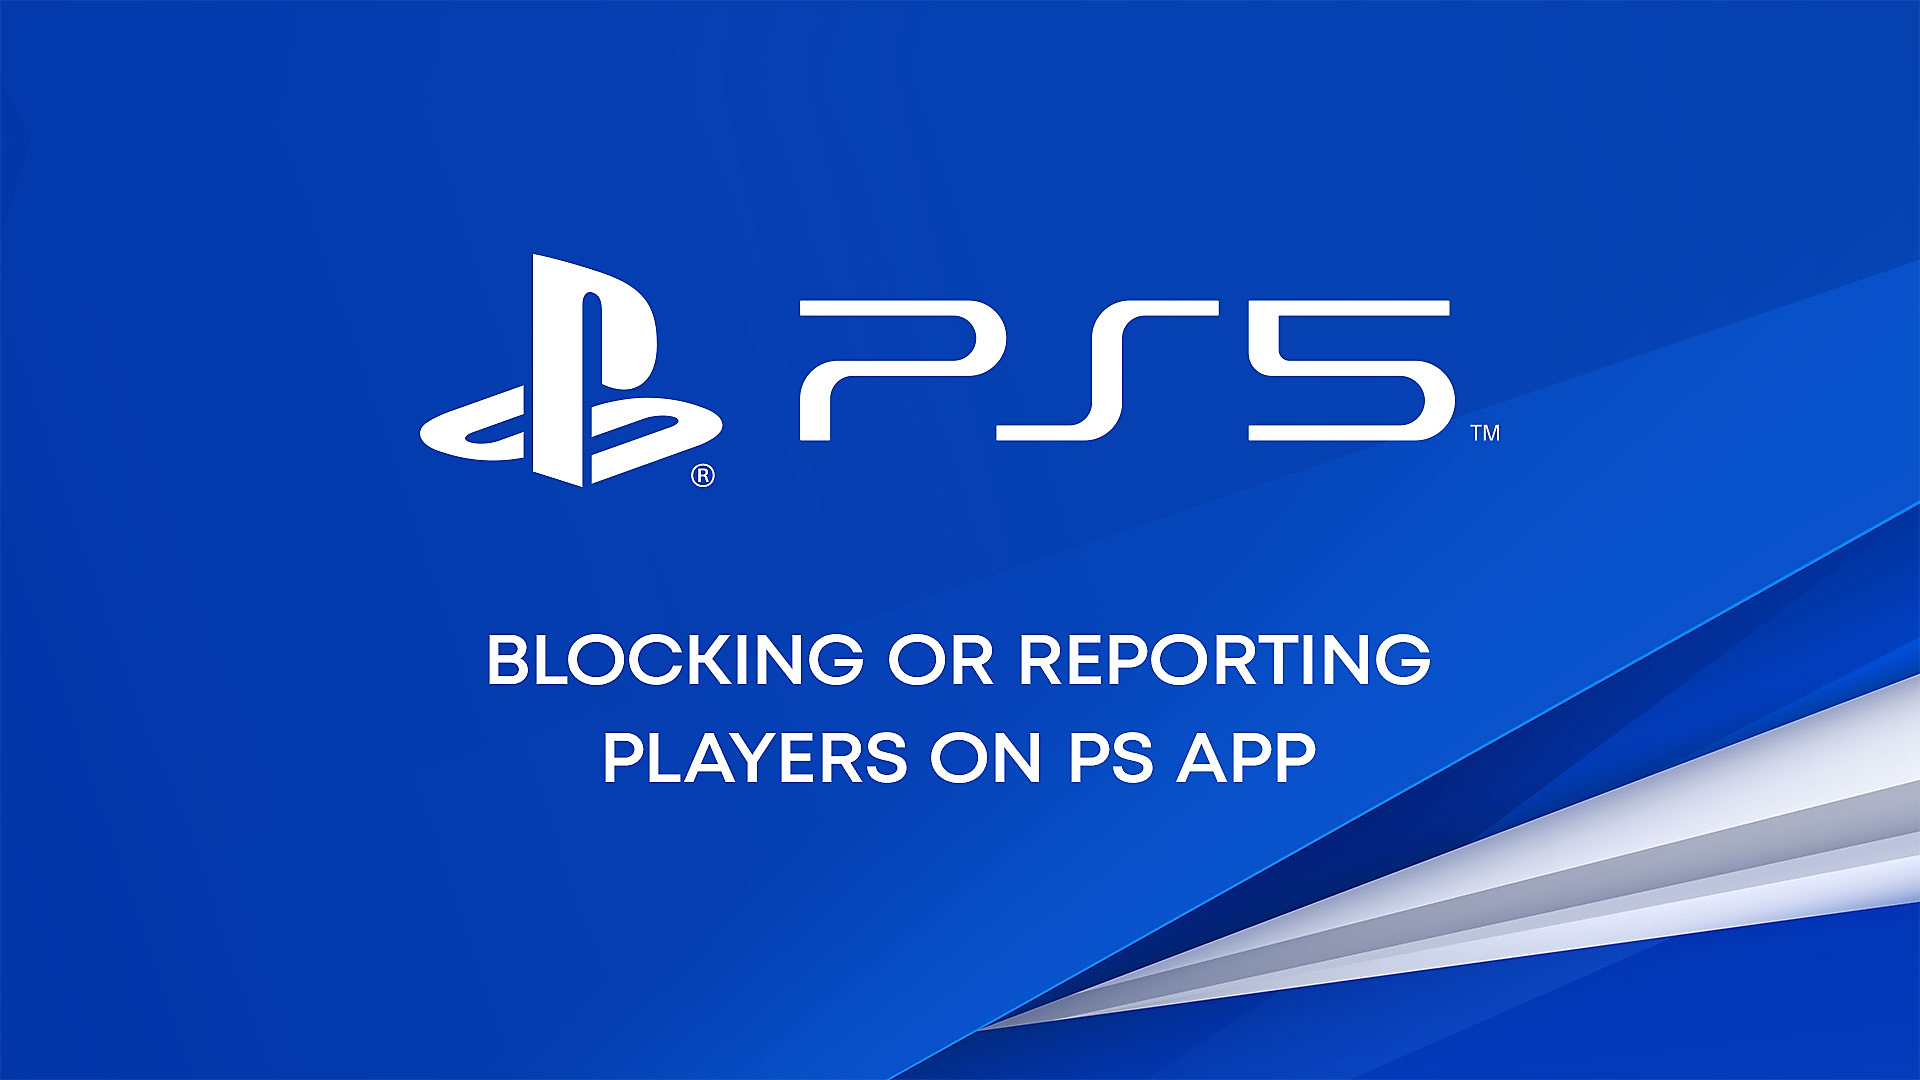 PS Appでプレーヤーをブロックまたは報告する方法についてのYouTube動画。